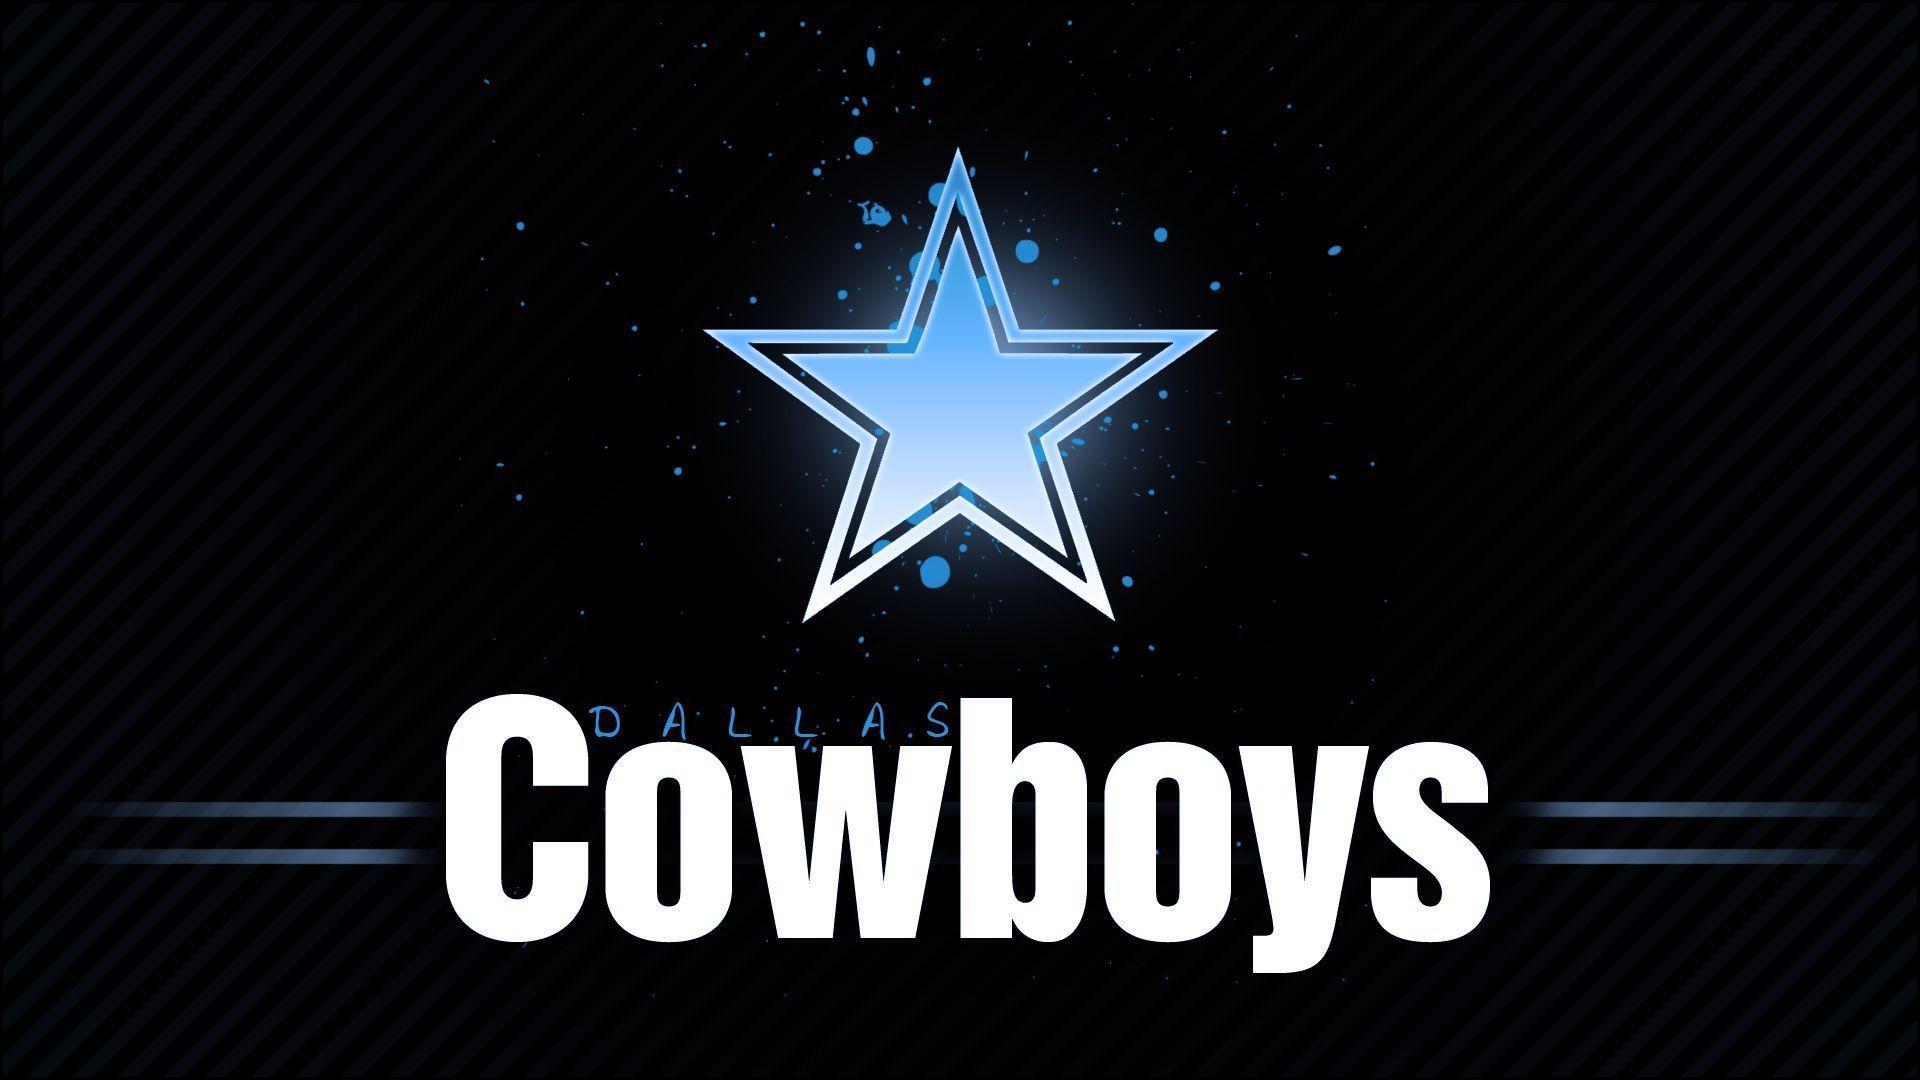 Sports Dallas Cowboys Wallpaper 1680x1050 px Free Download